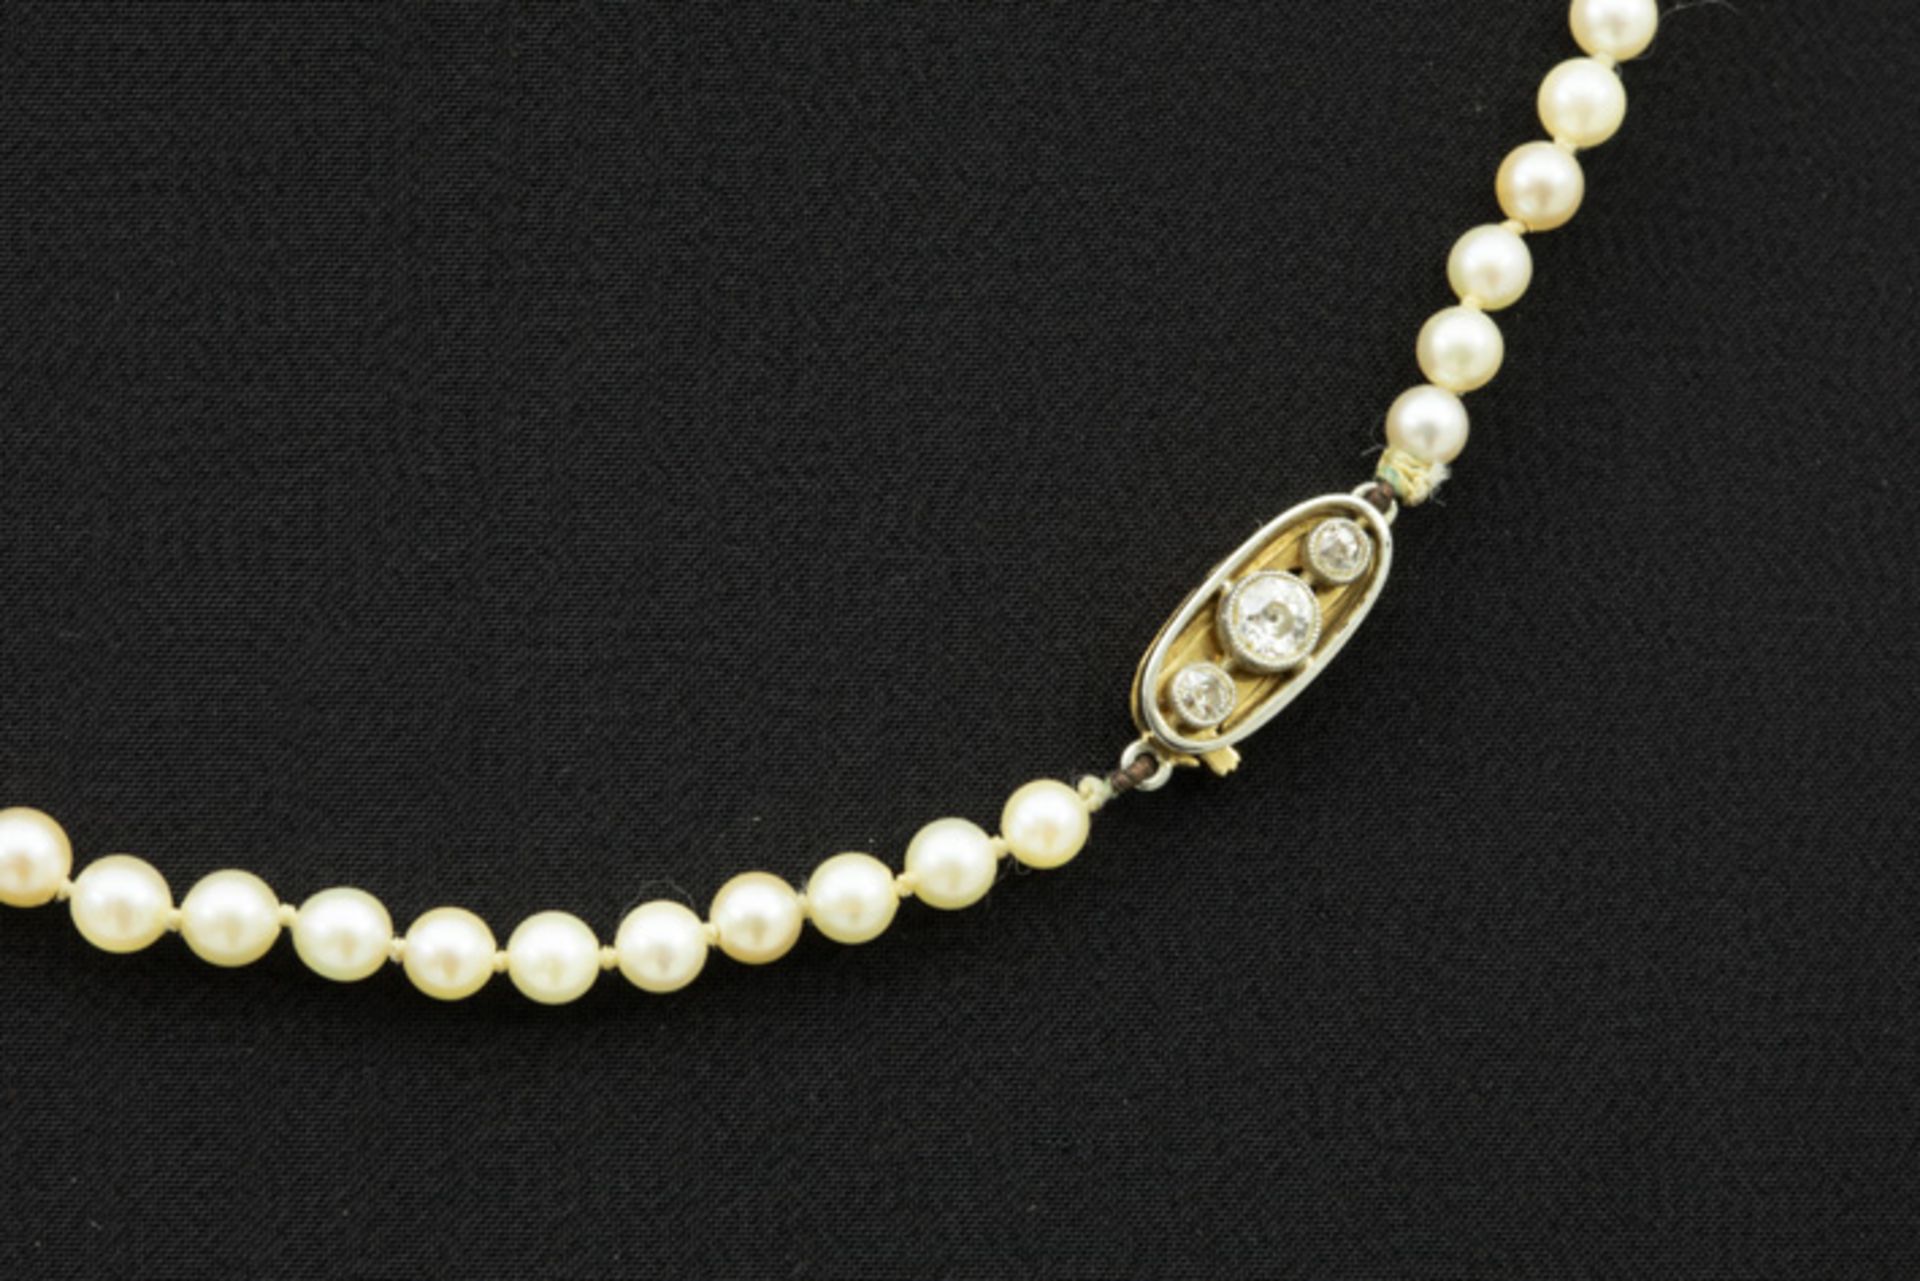 Art Deco-collier met één rij zgn "perles fines" en met een slot in goud (18 [...] - Image 2 of 2